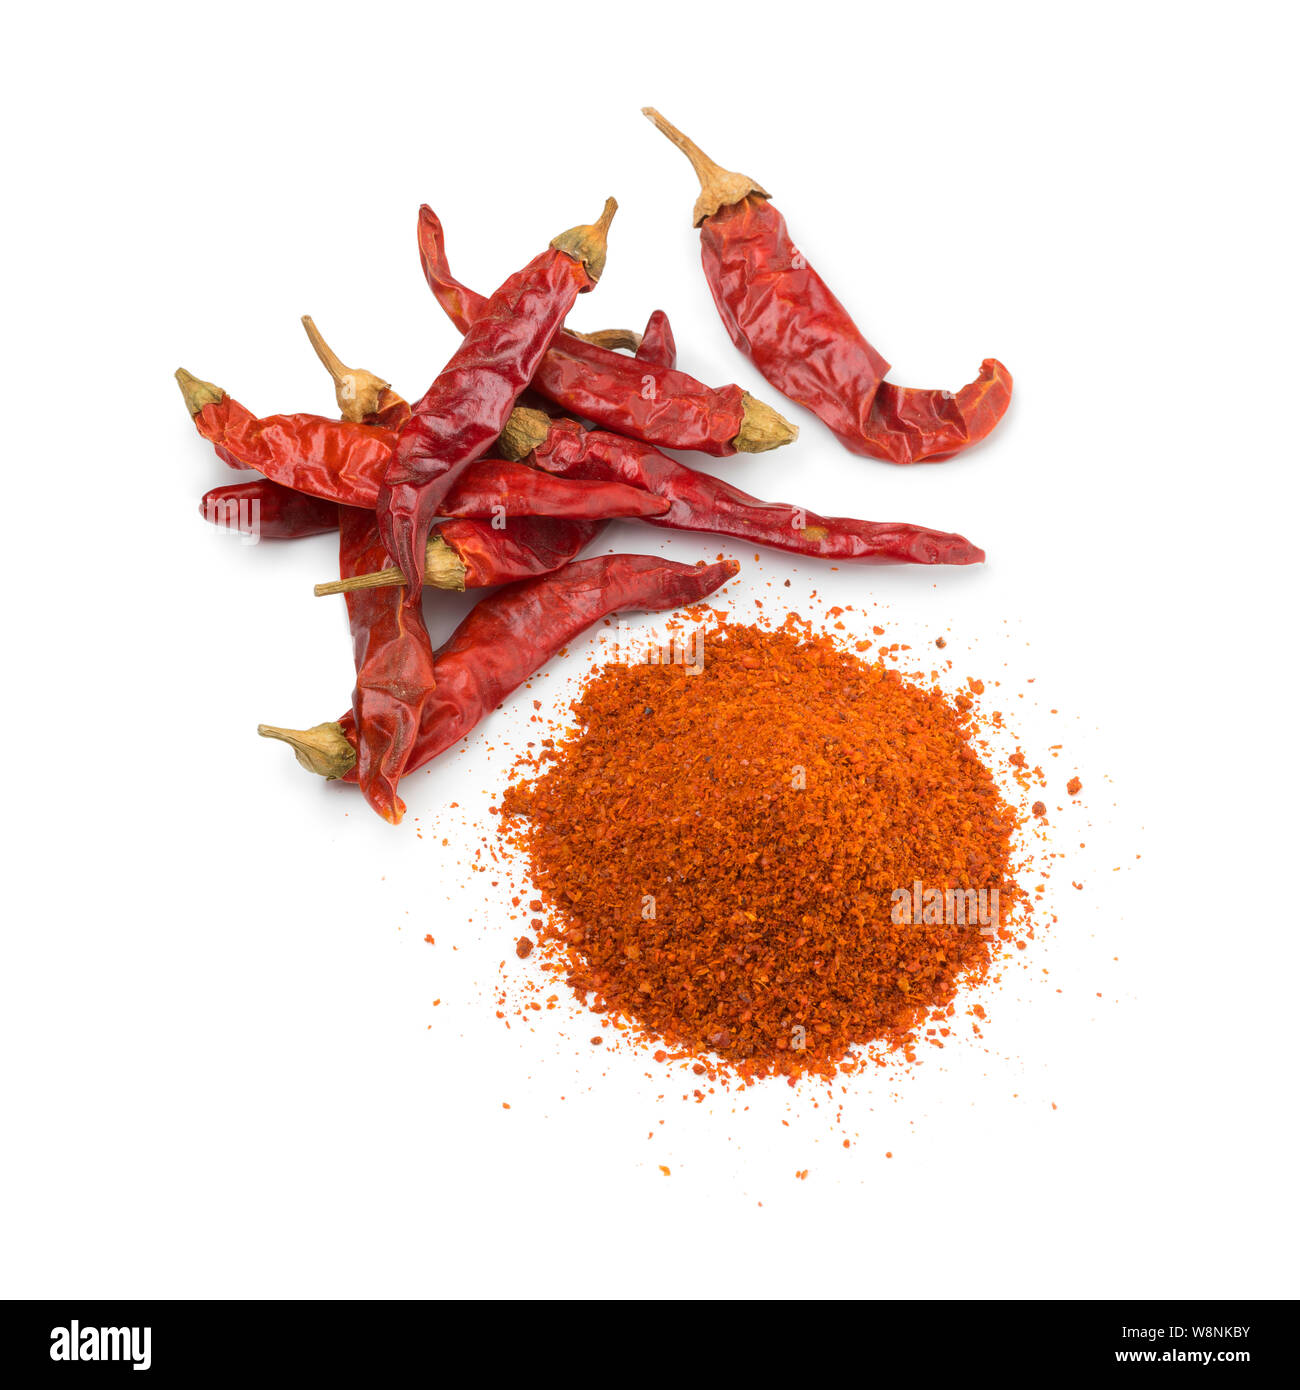 Haufen getrocknete rote Chilischoten und einem Haufen Chilipulver auf weißem Hintergrund Stockfoto